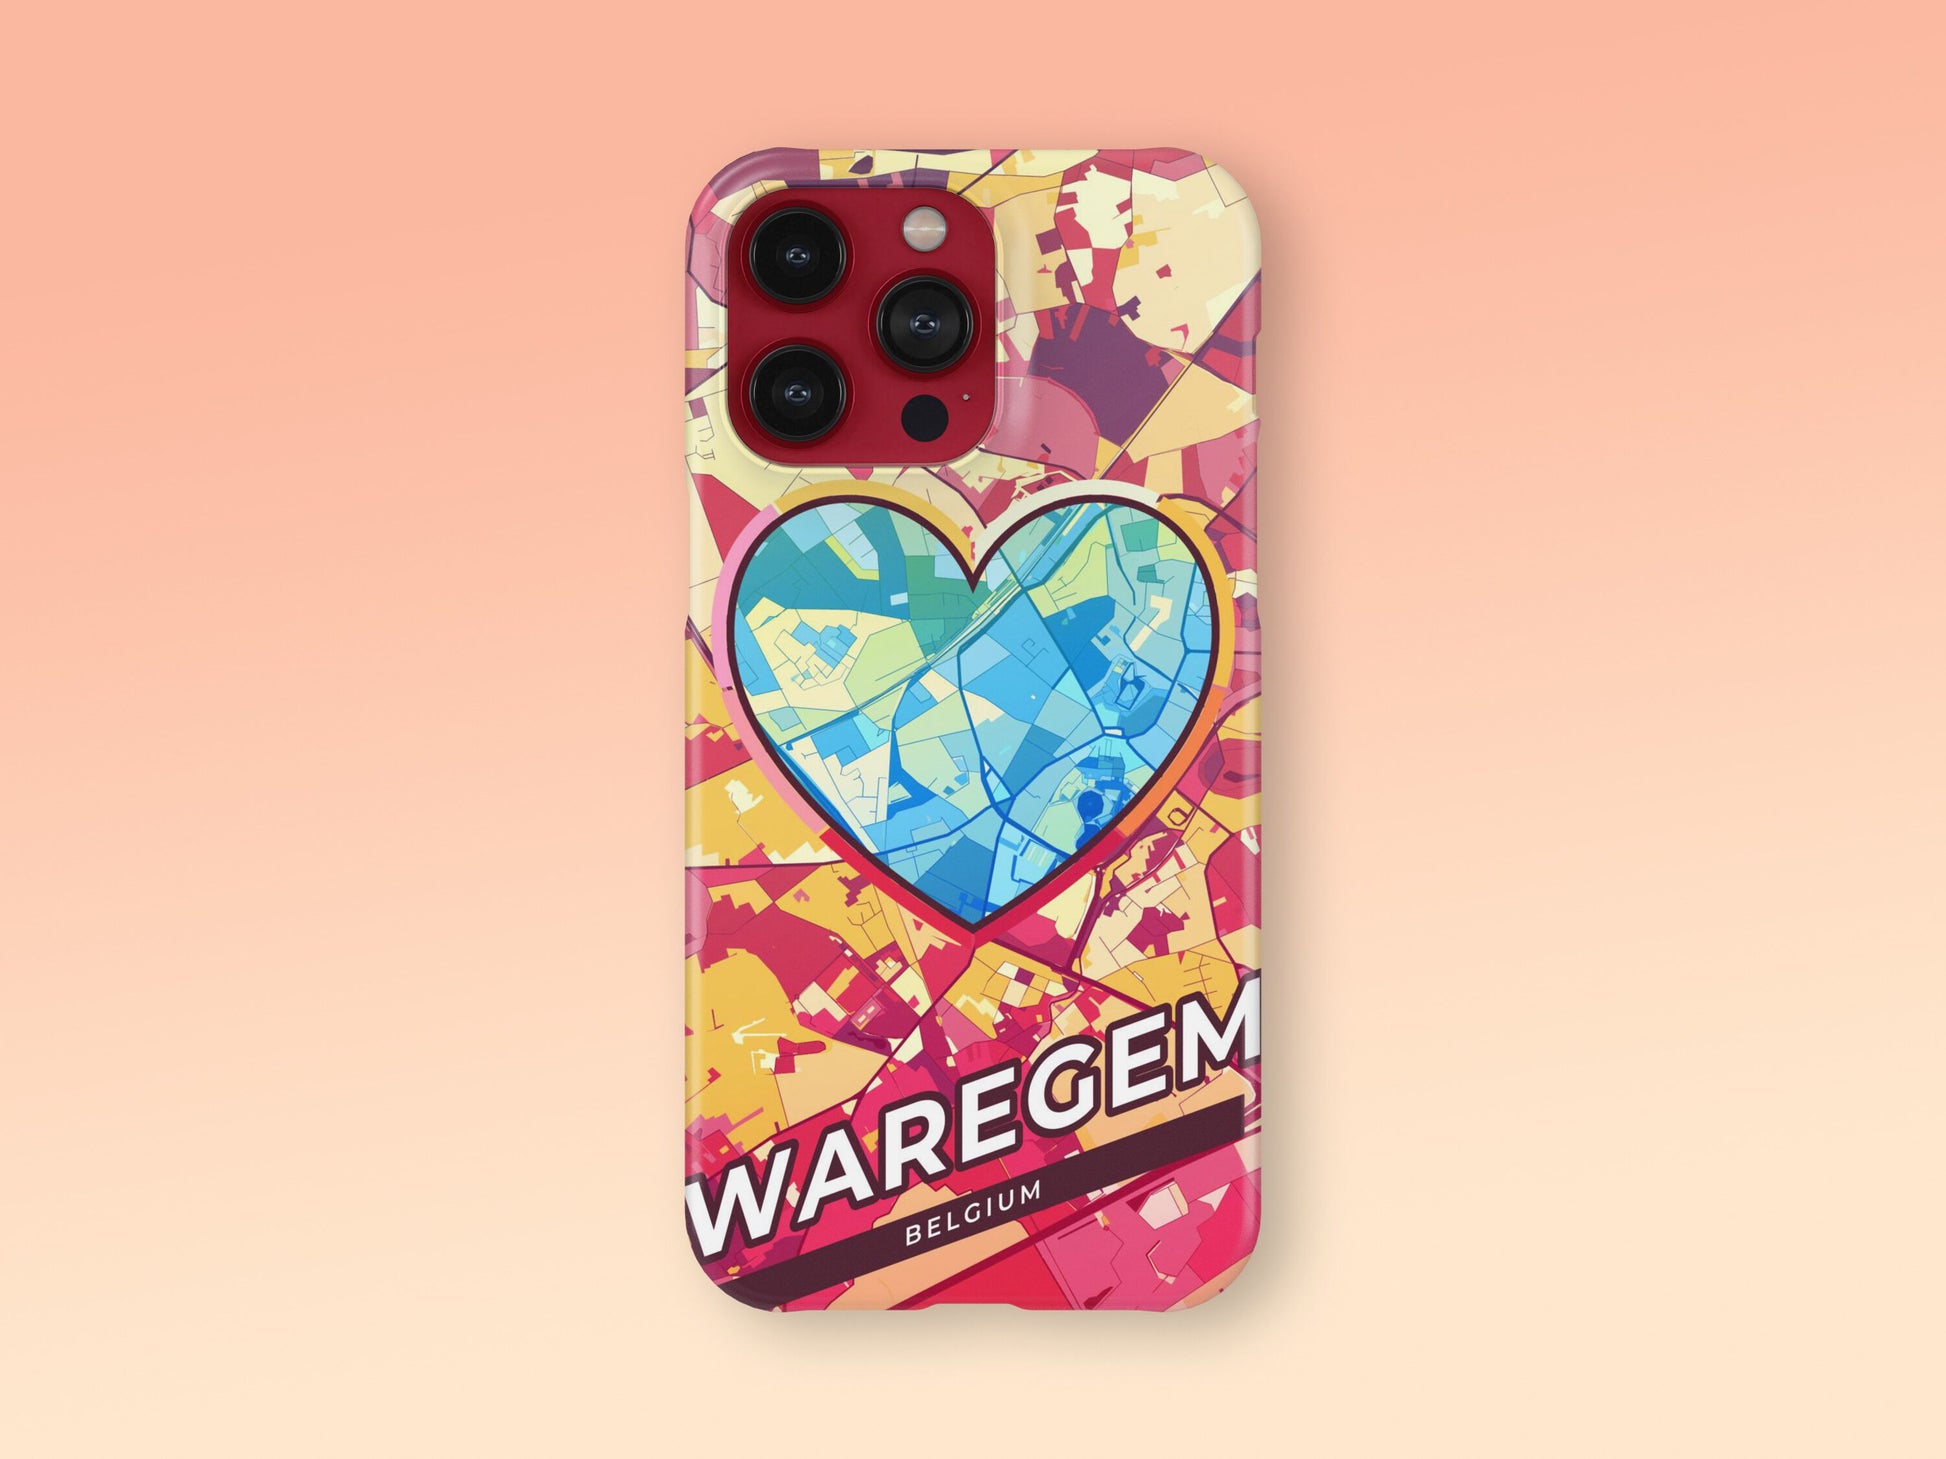 Waregem Belgium slim phone case with colorful icon 2